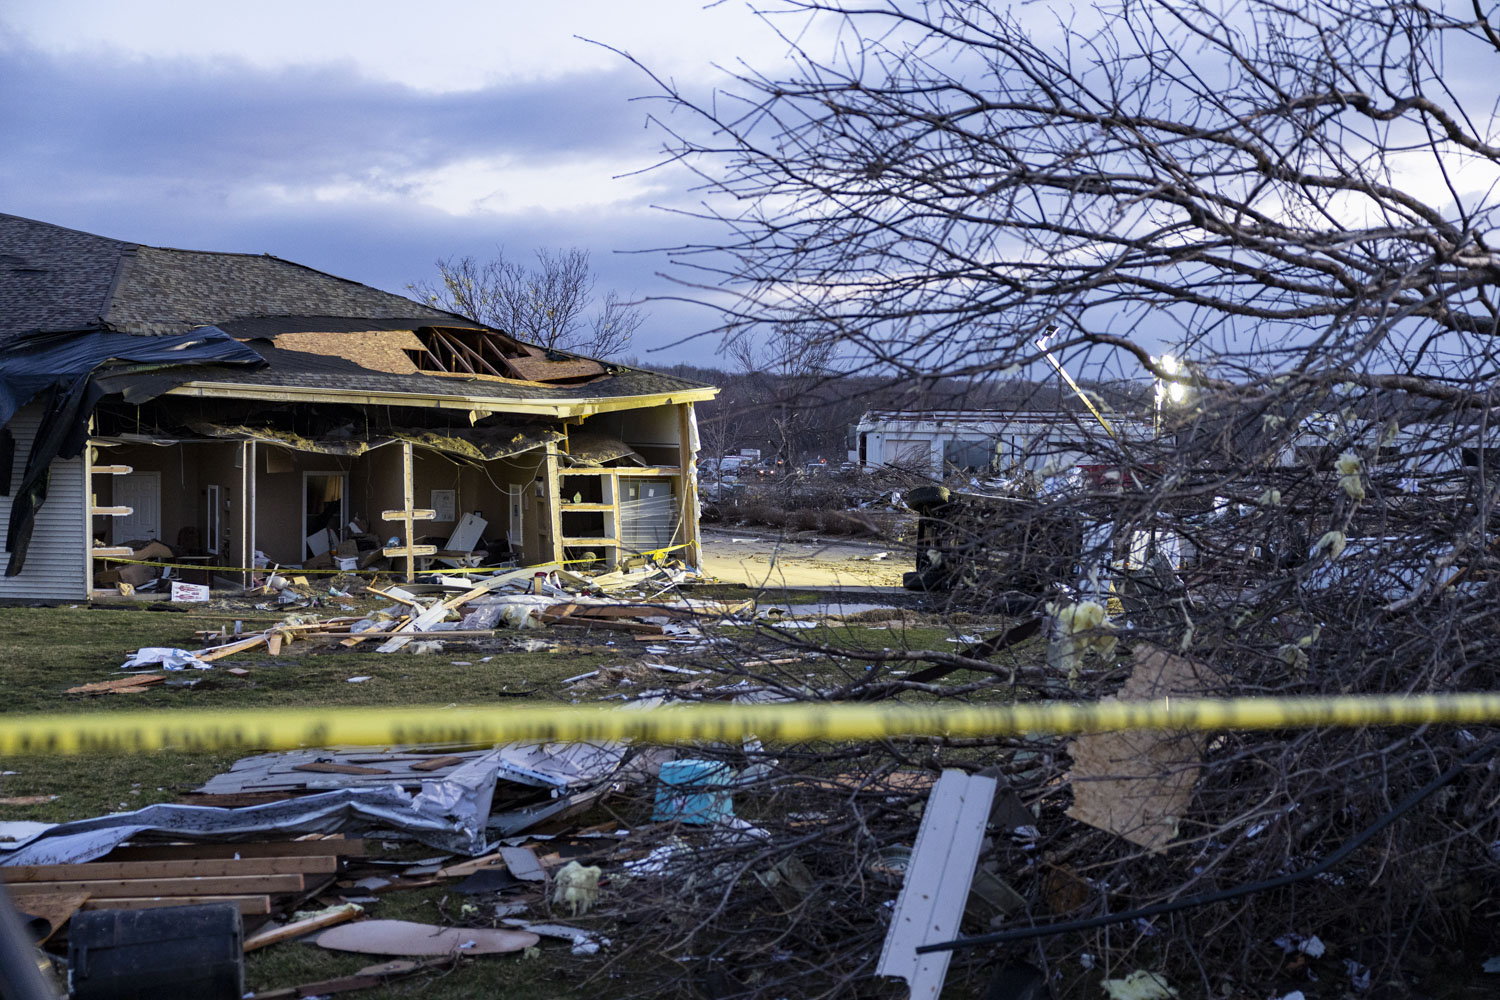 Photos Coralville tornado debris The Daily Iowan